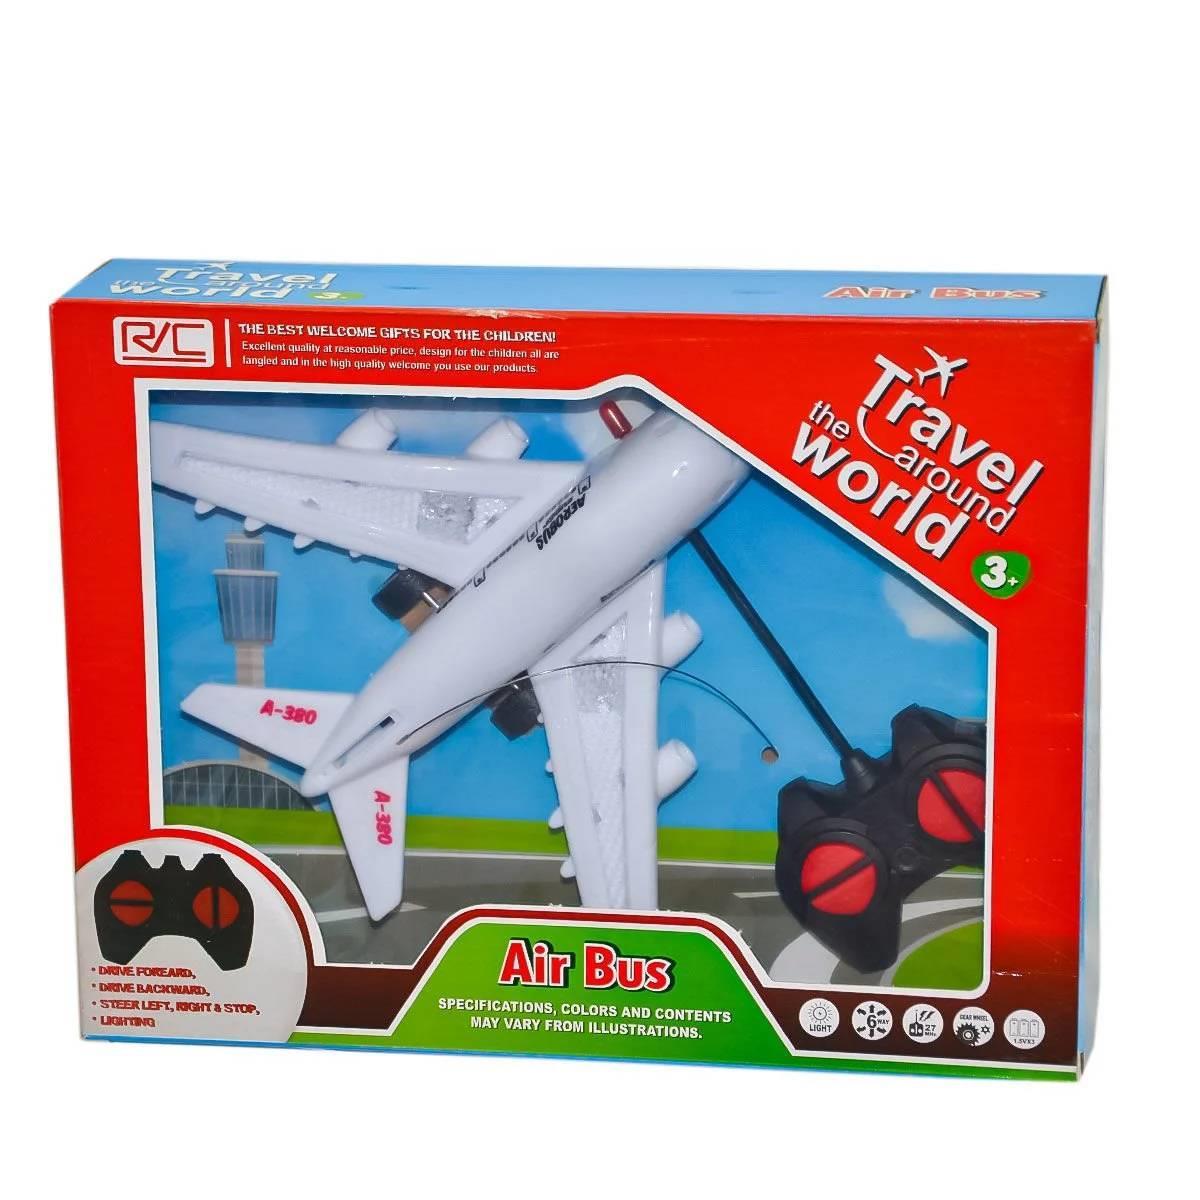 Kumandali Uçak Beyaz 00014600 | Batoys Oyuncak